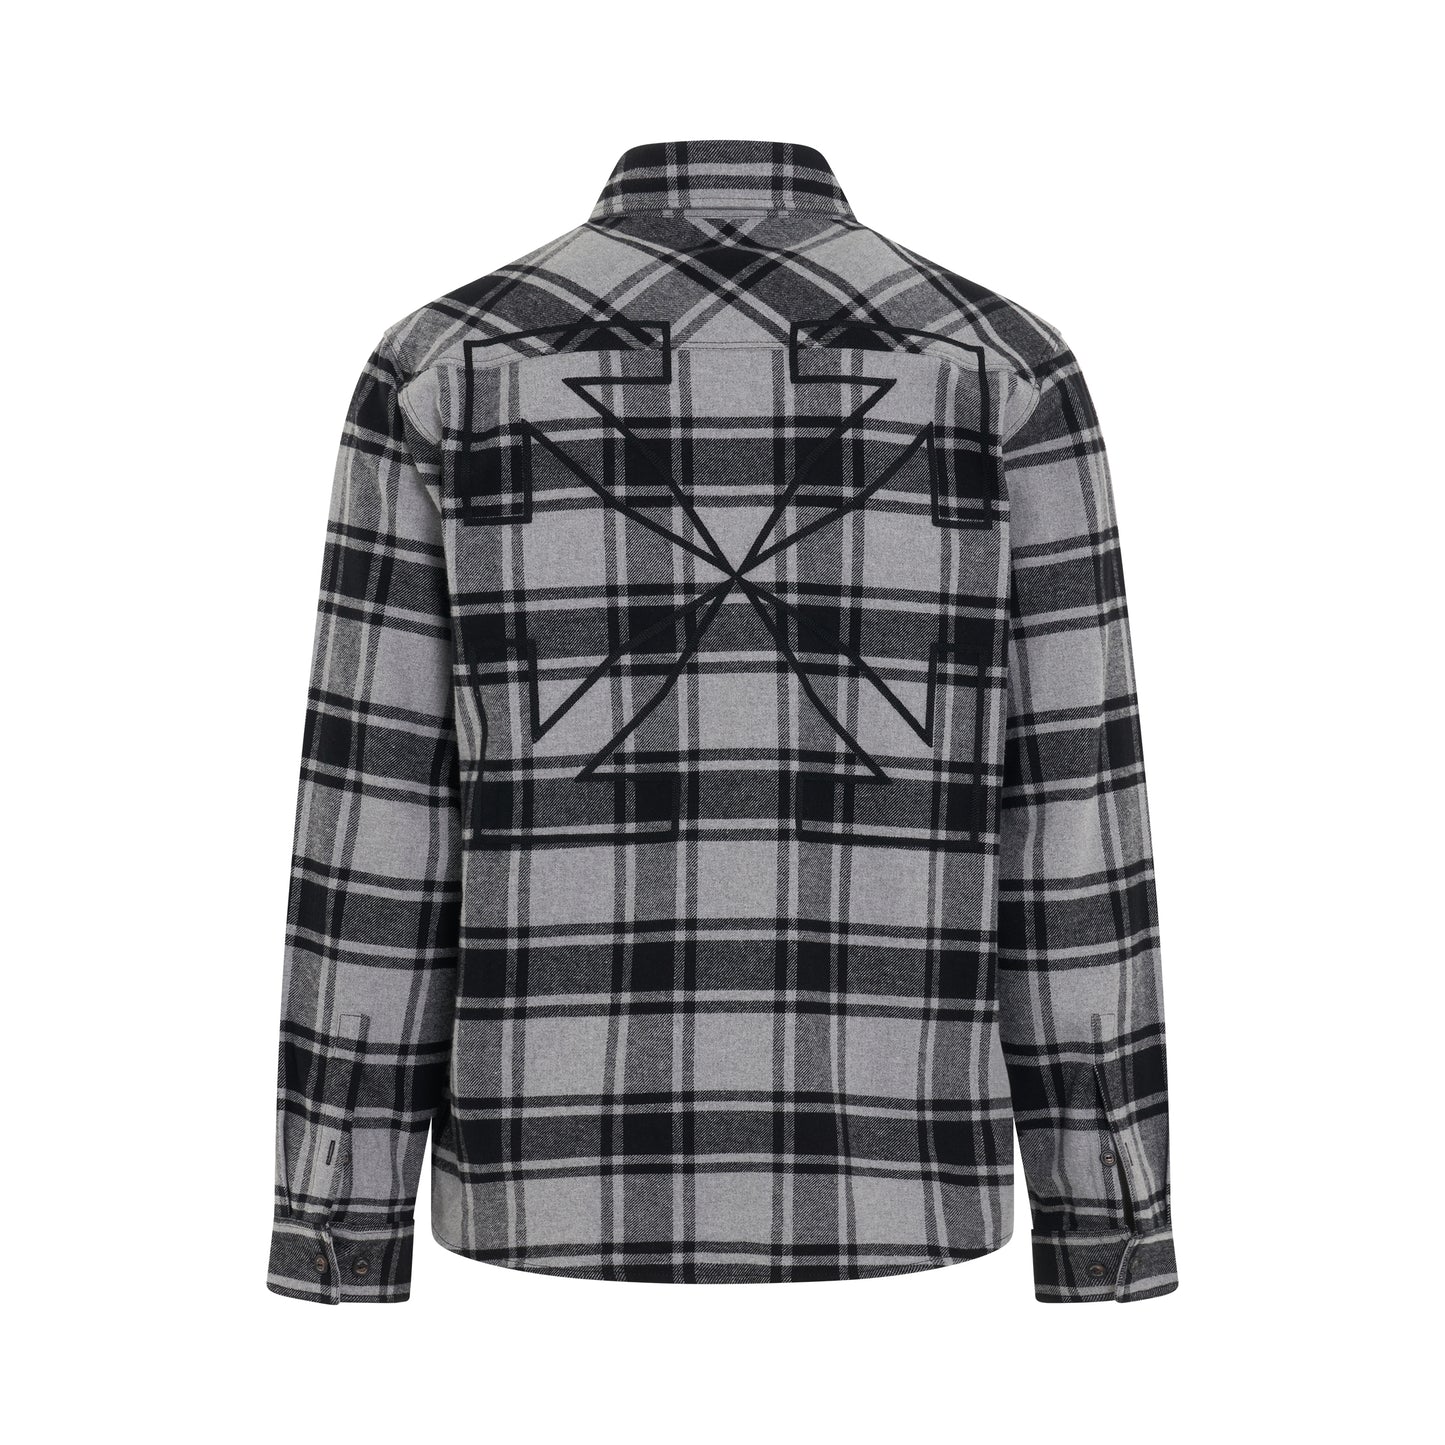 Outline Arrow Flannel Shirt in Melange Grey/Black